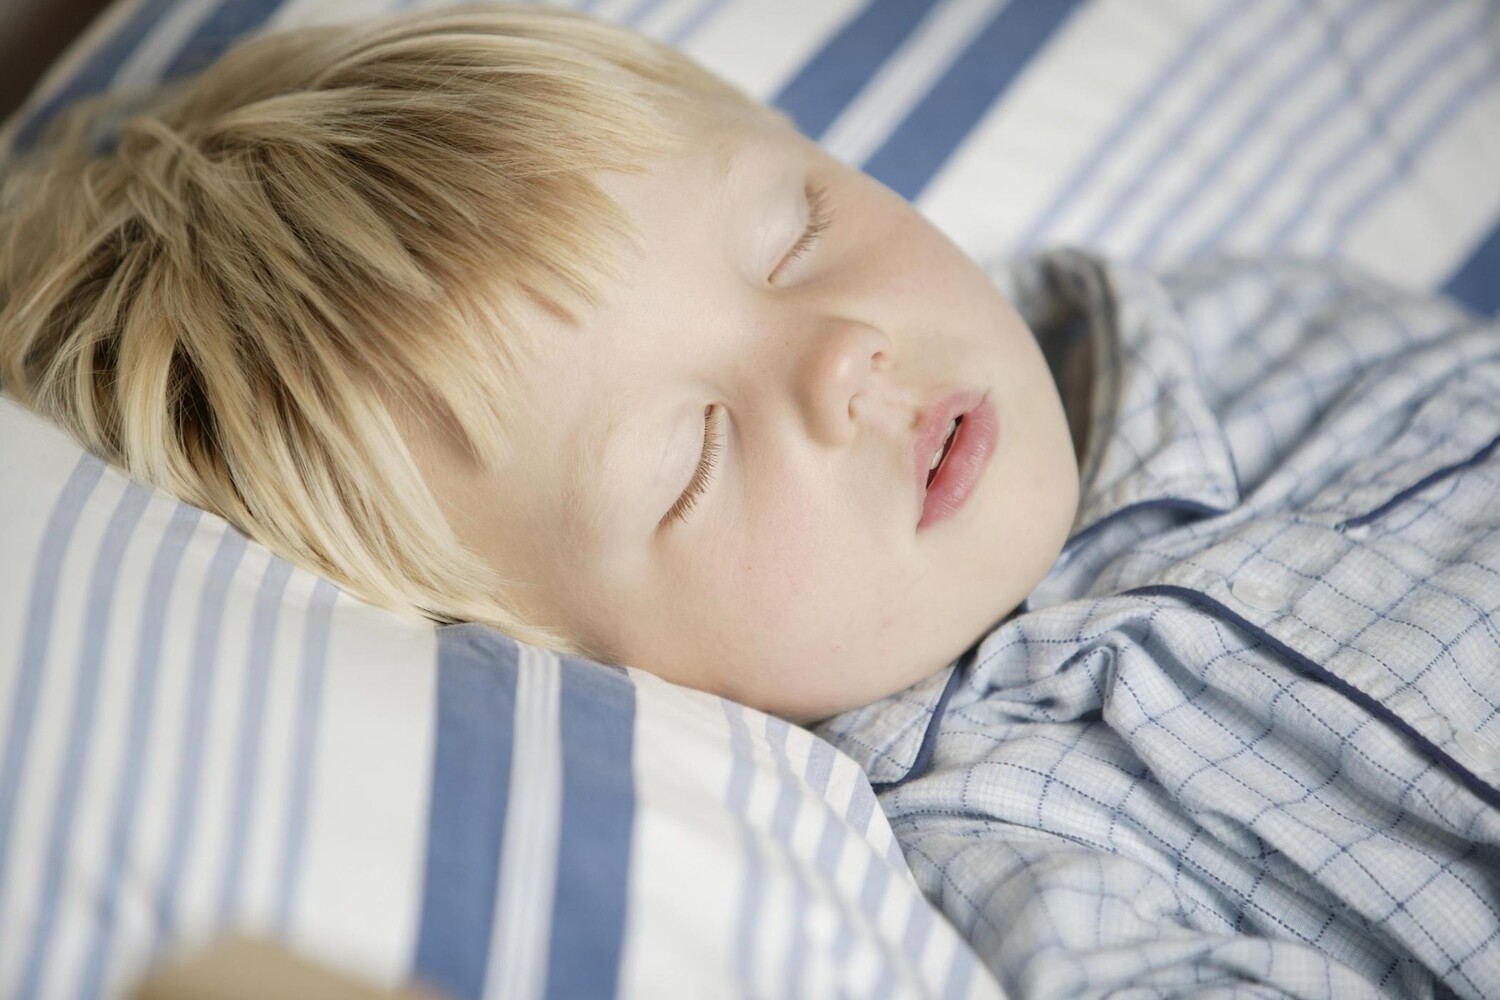 Сплю дышу ртом. Мальчик мучается. Фото 3 летнего мальчика спящего.